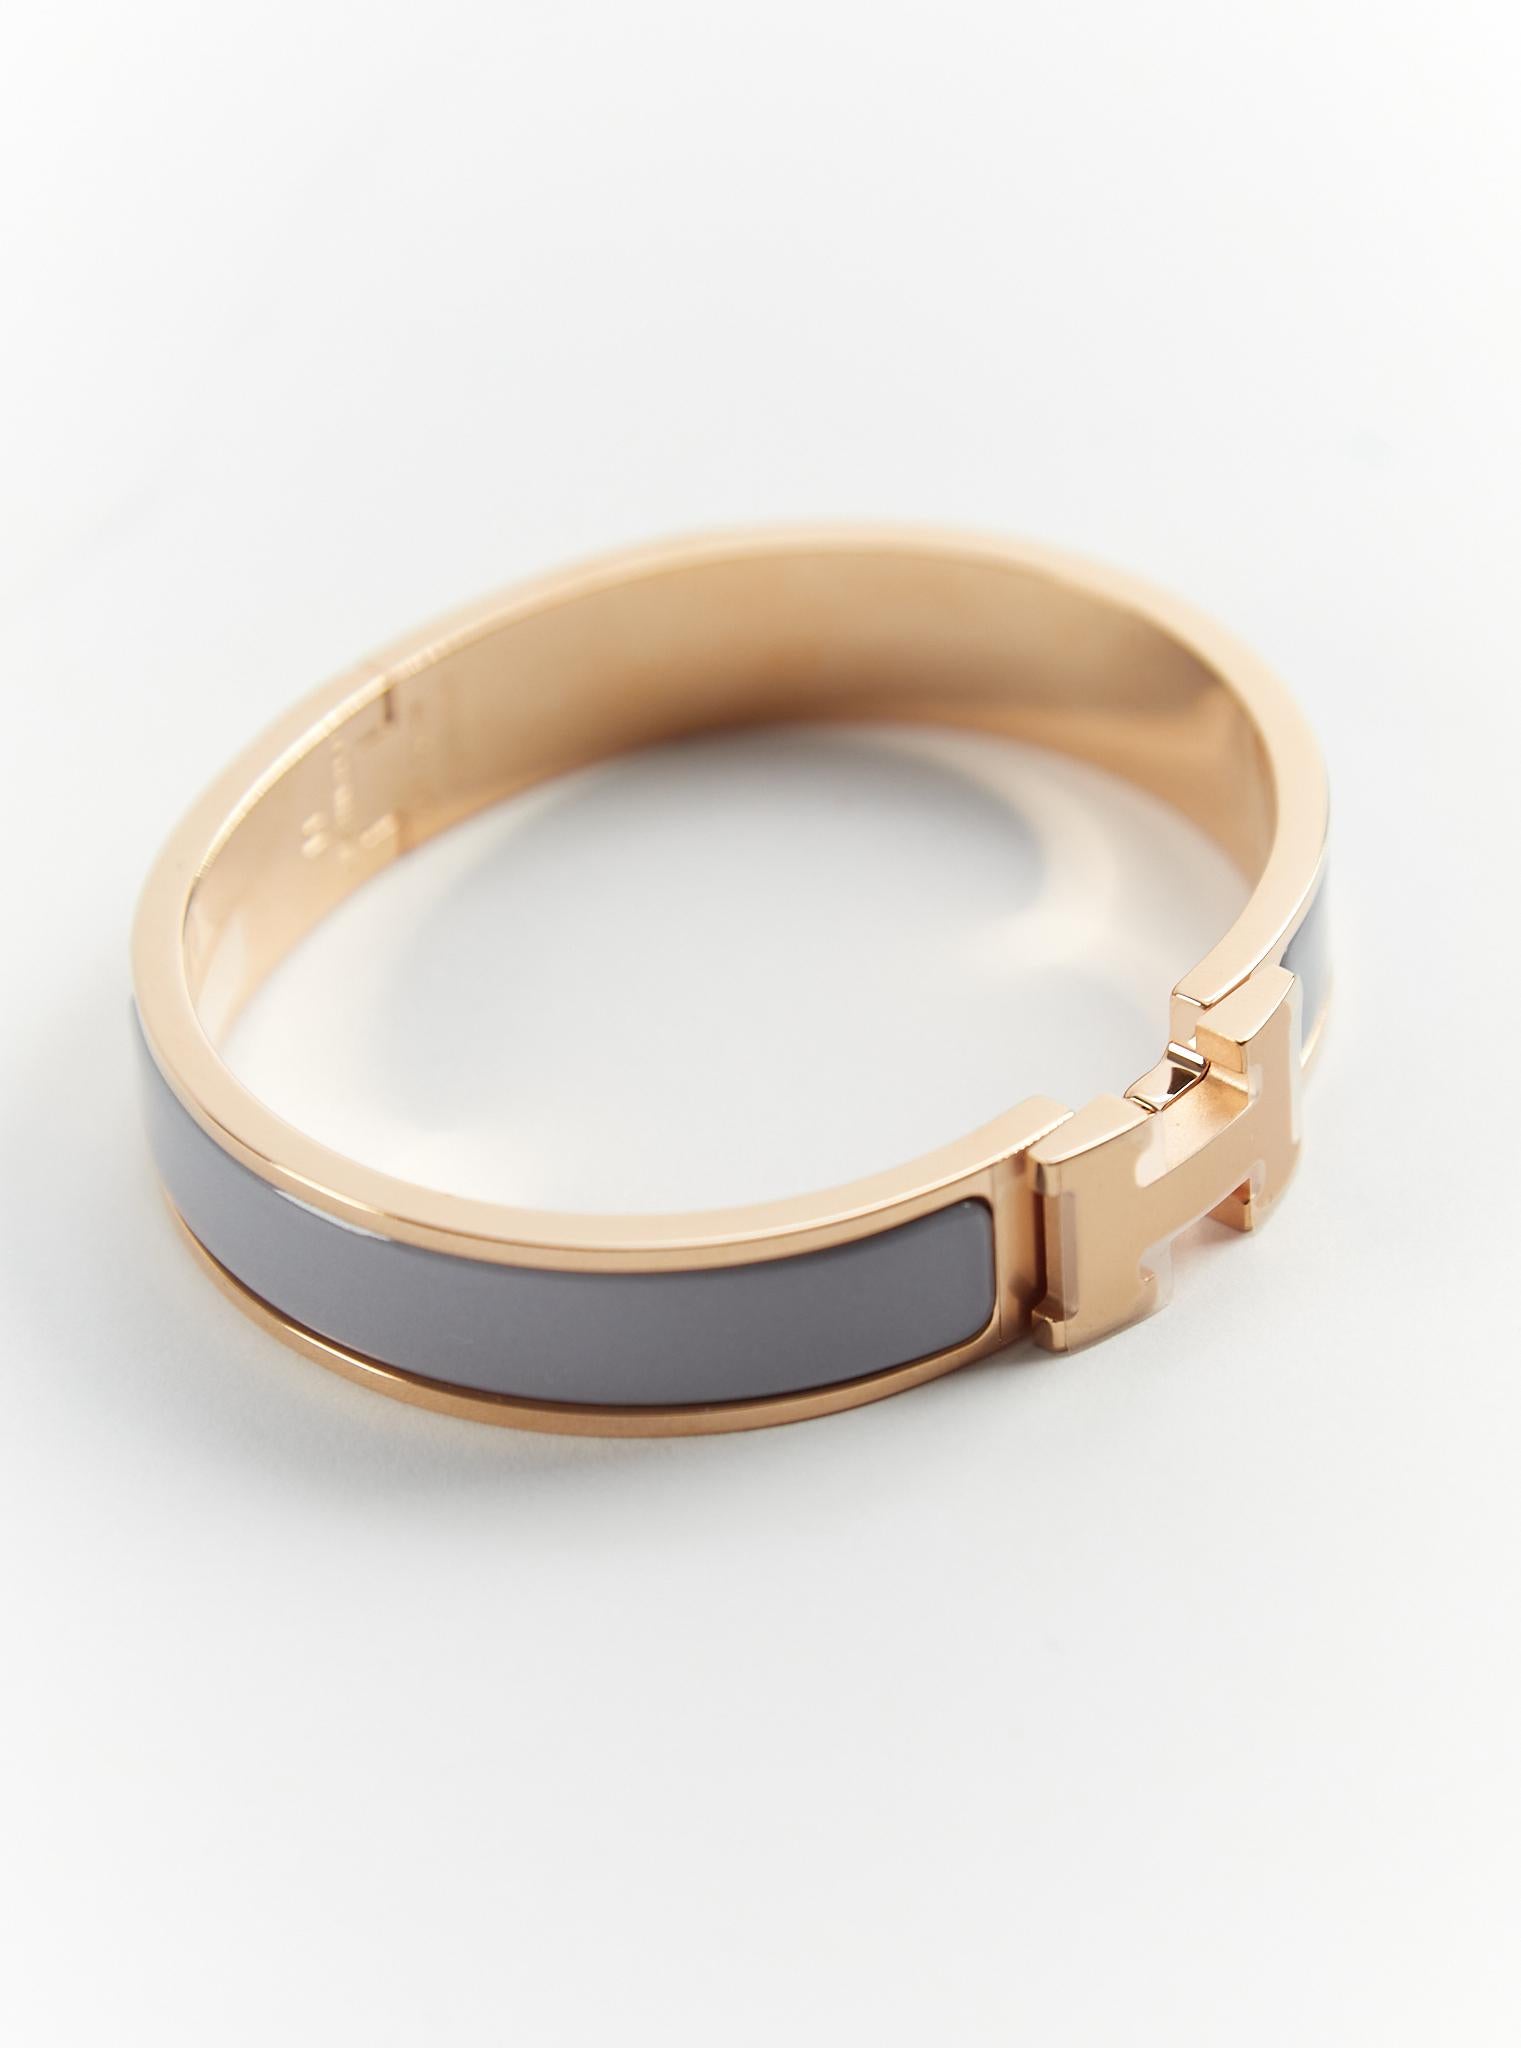 Hermès Clic H GM Armband in Gris-Gris und Roségold

Größe des Handgelenks: 16.8 cm  Breite: 8 mm

Hergestellt in Frankreich